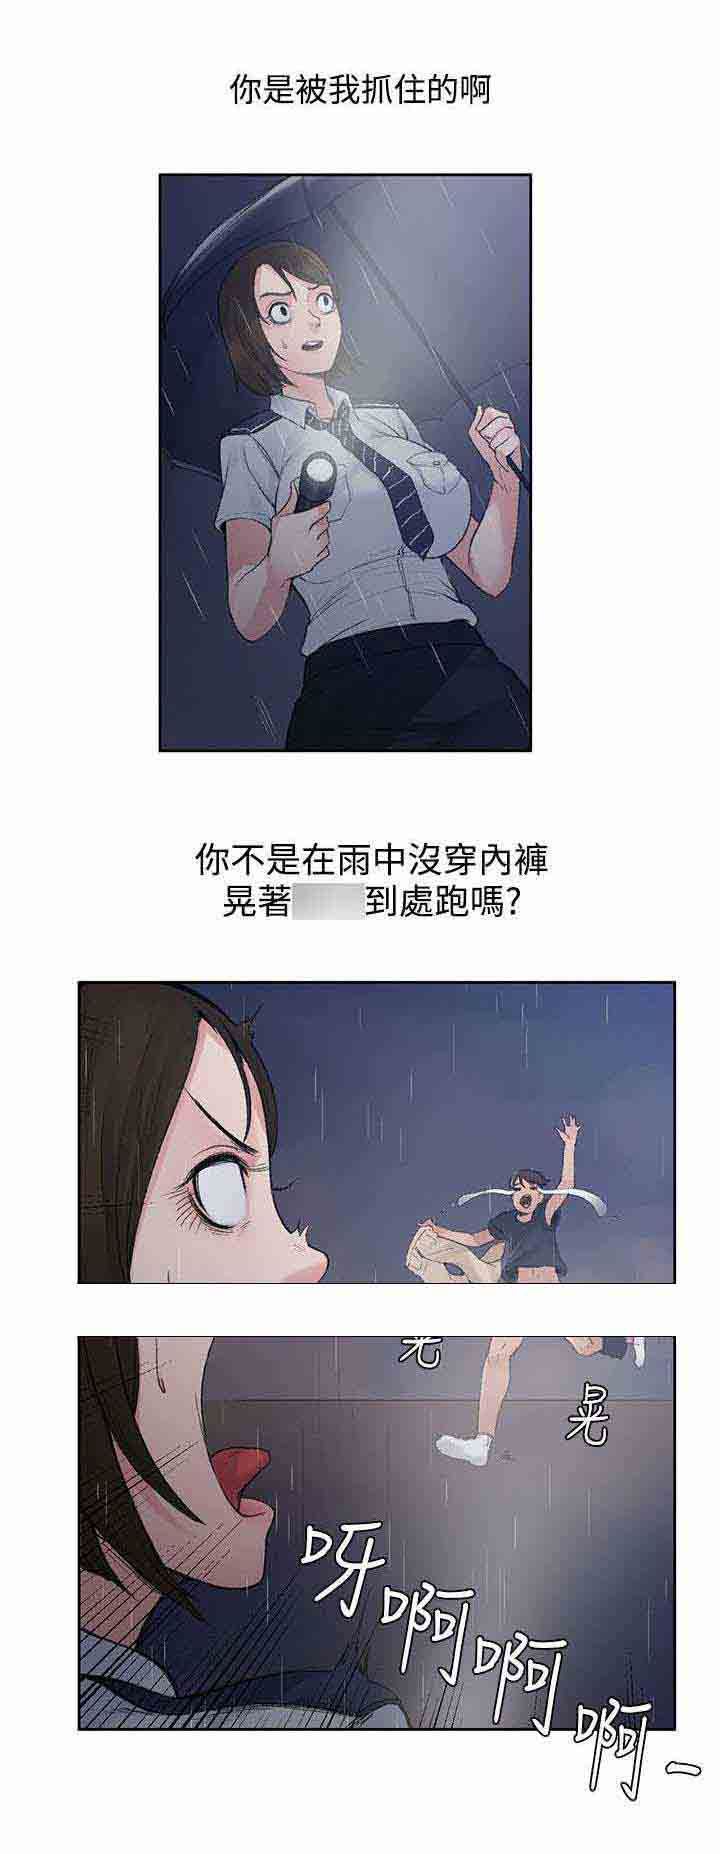 韩国污漫画 甜蜜的香氣 第2话你不出去吗 11